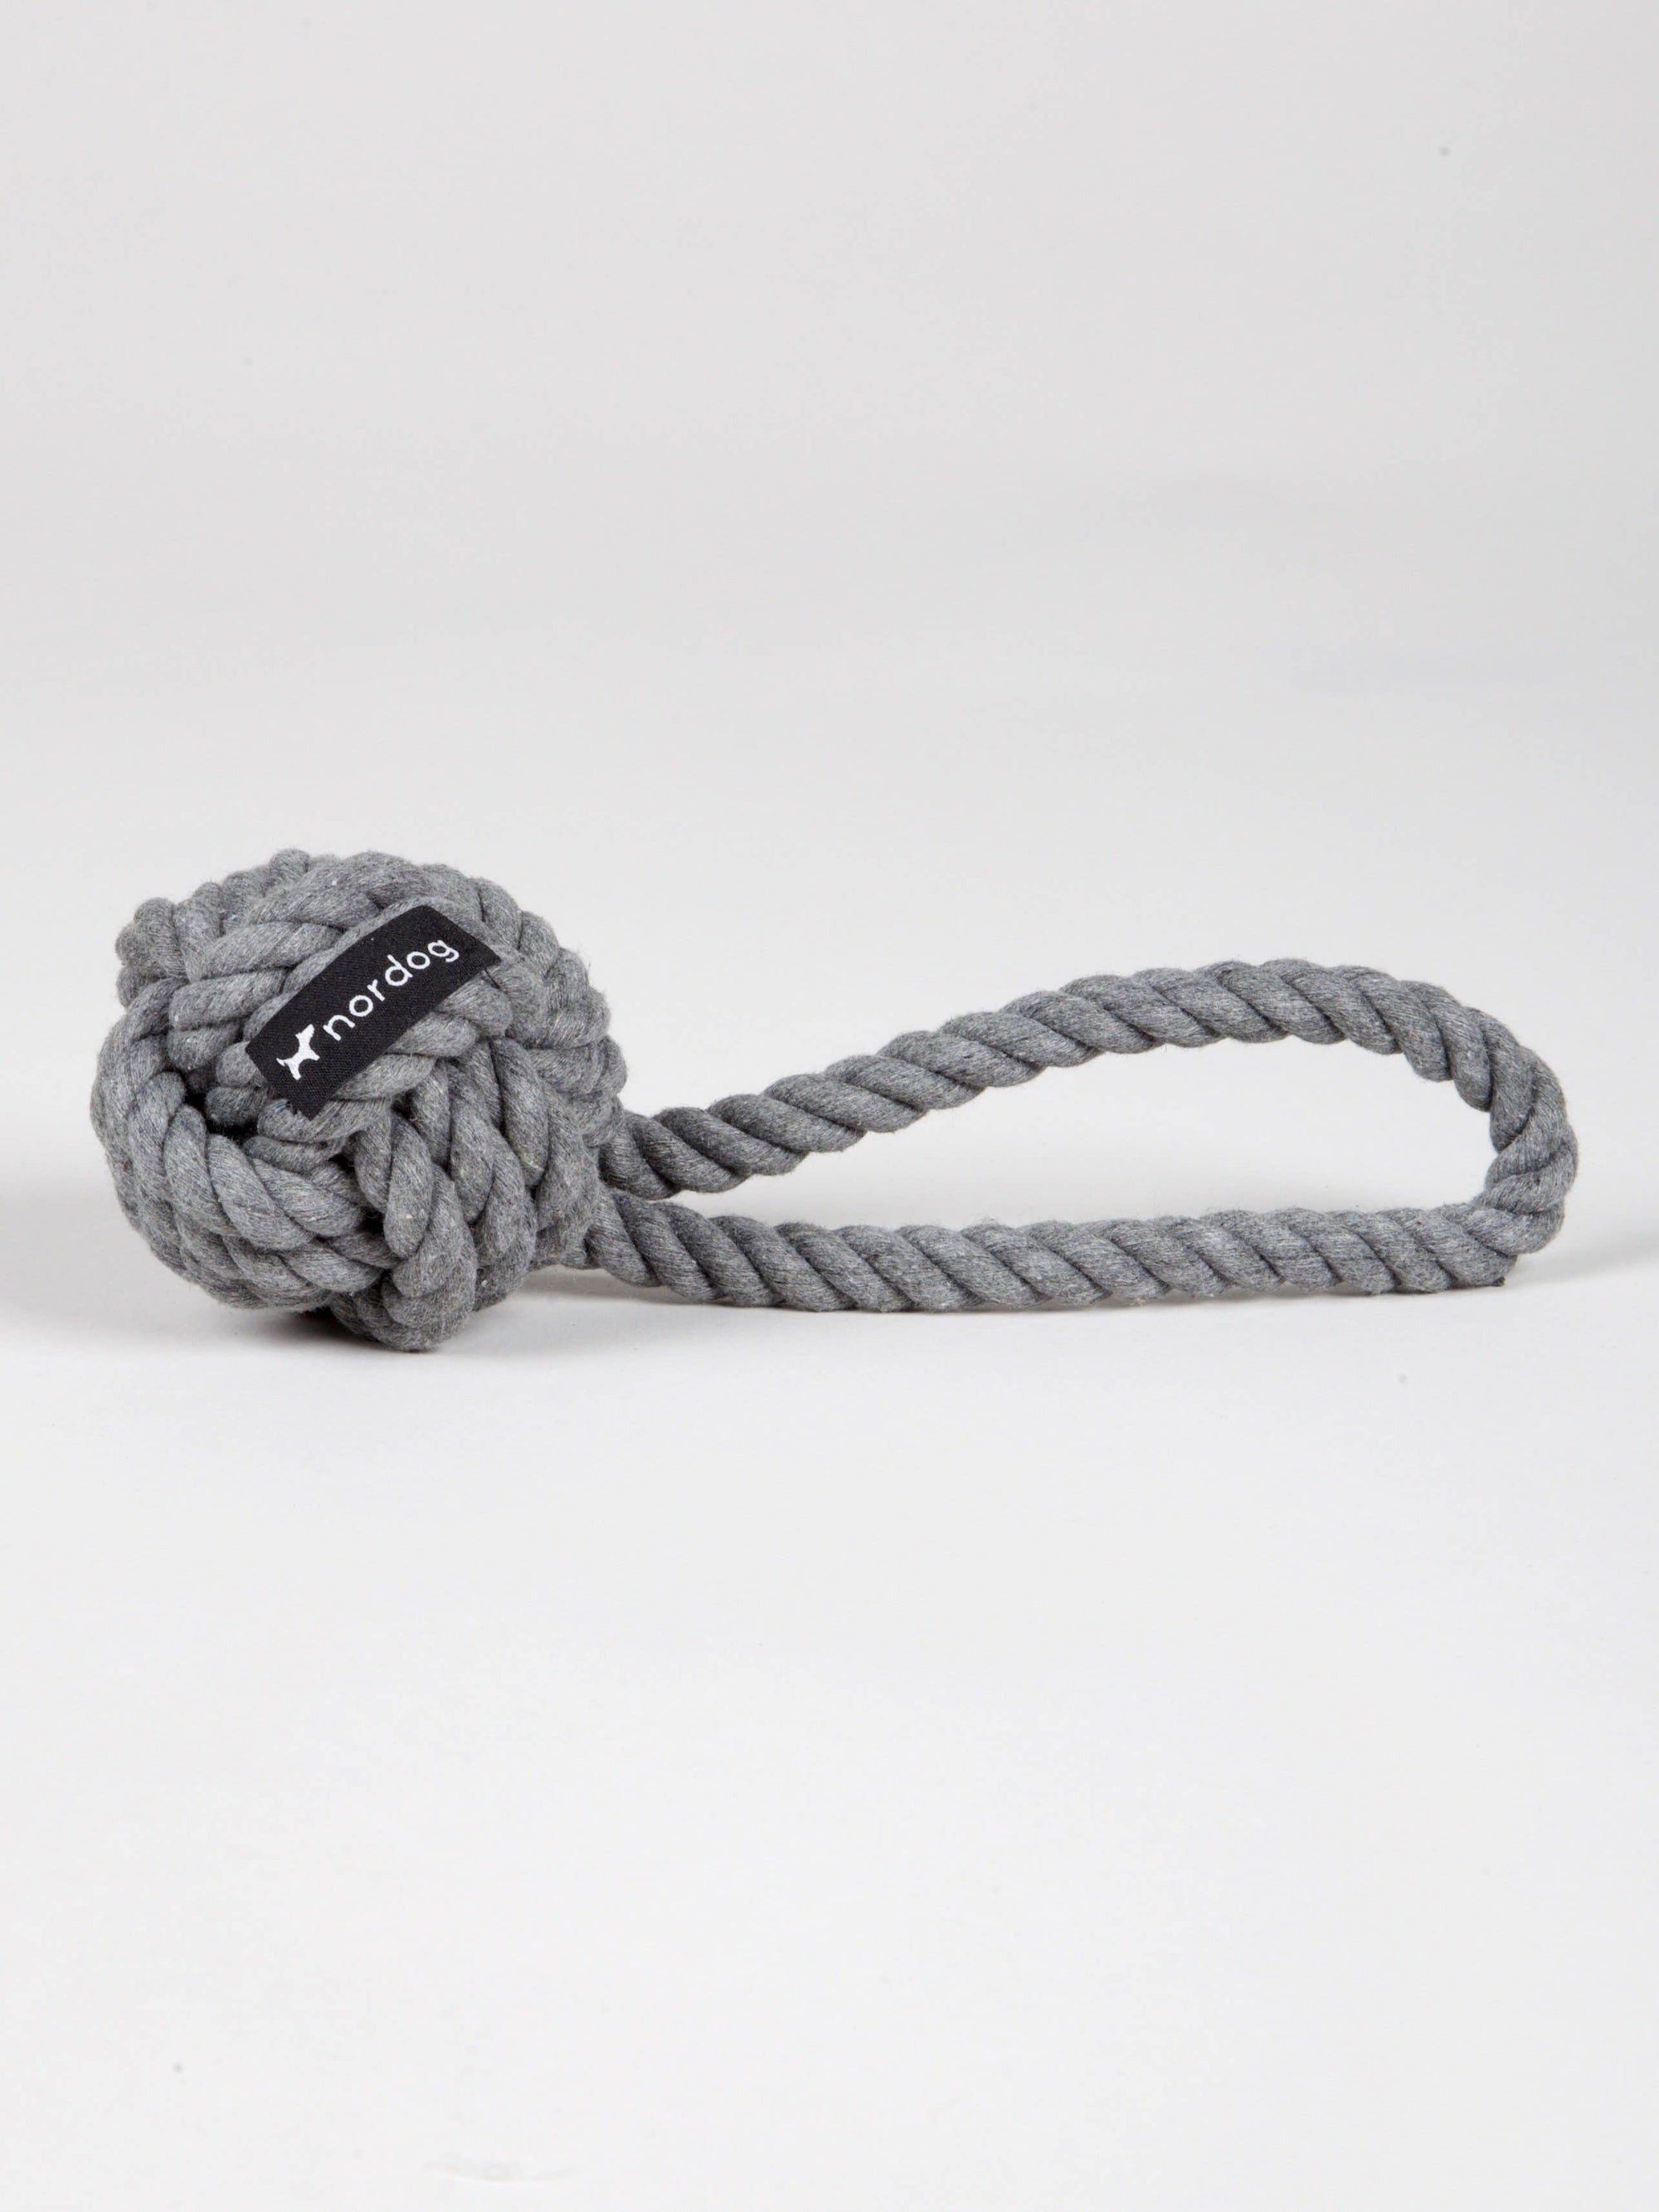 Original Rope Toy Graphite